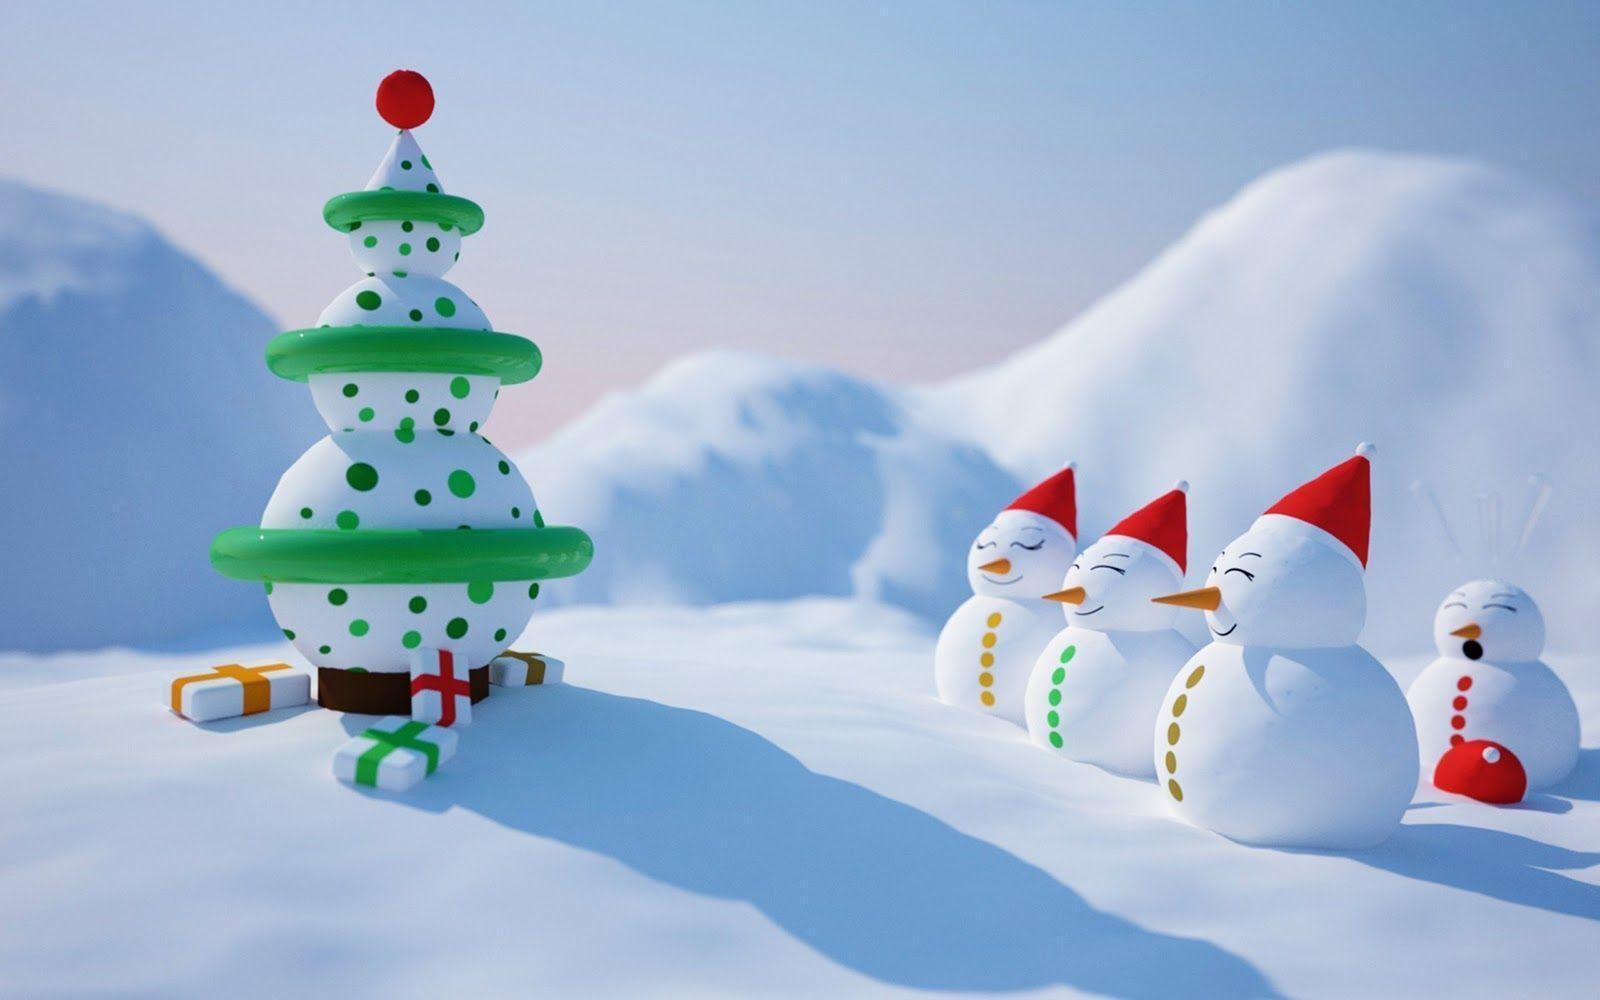 Animated Christmas Desktop wallpaper. Animated Christmas